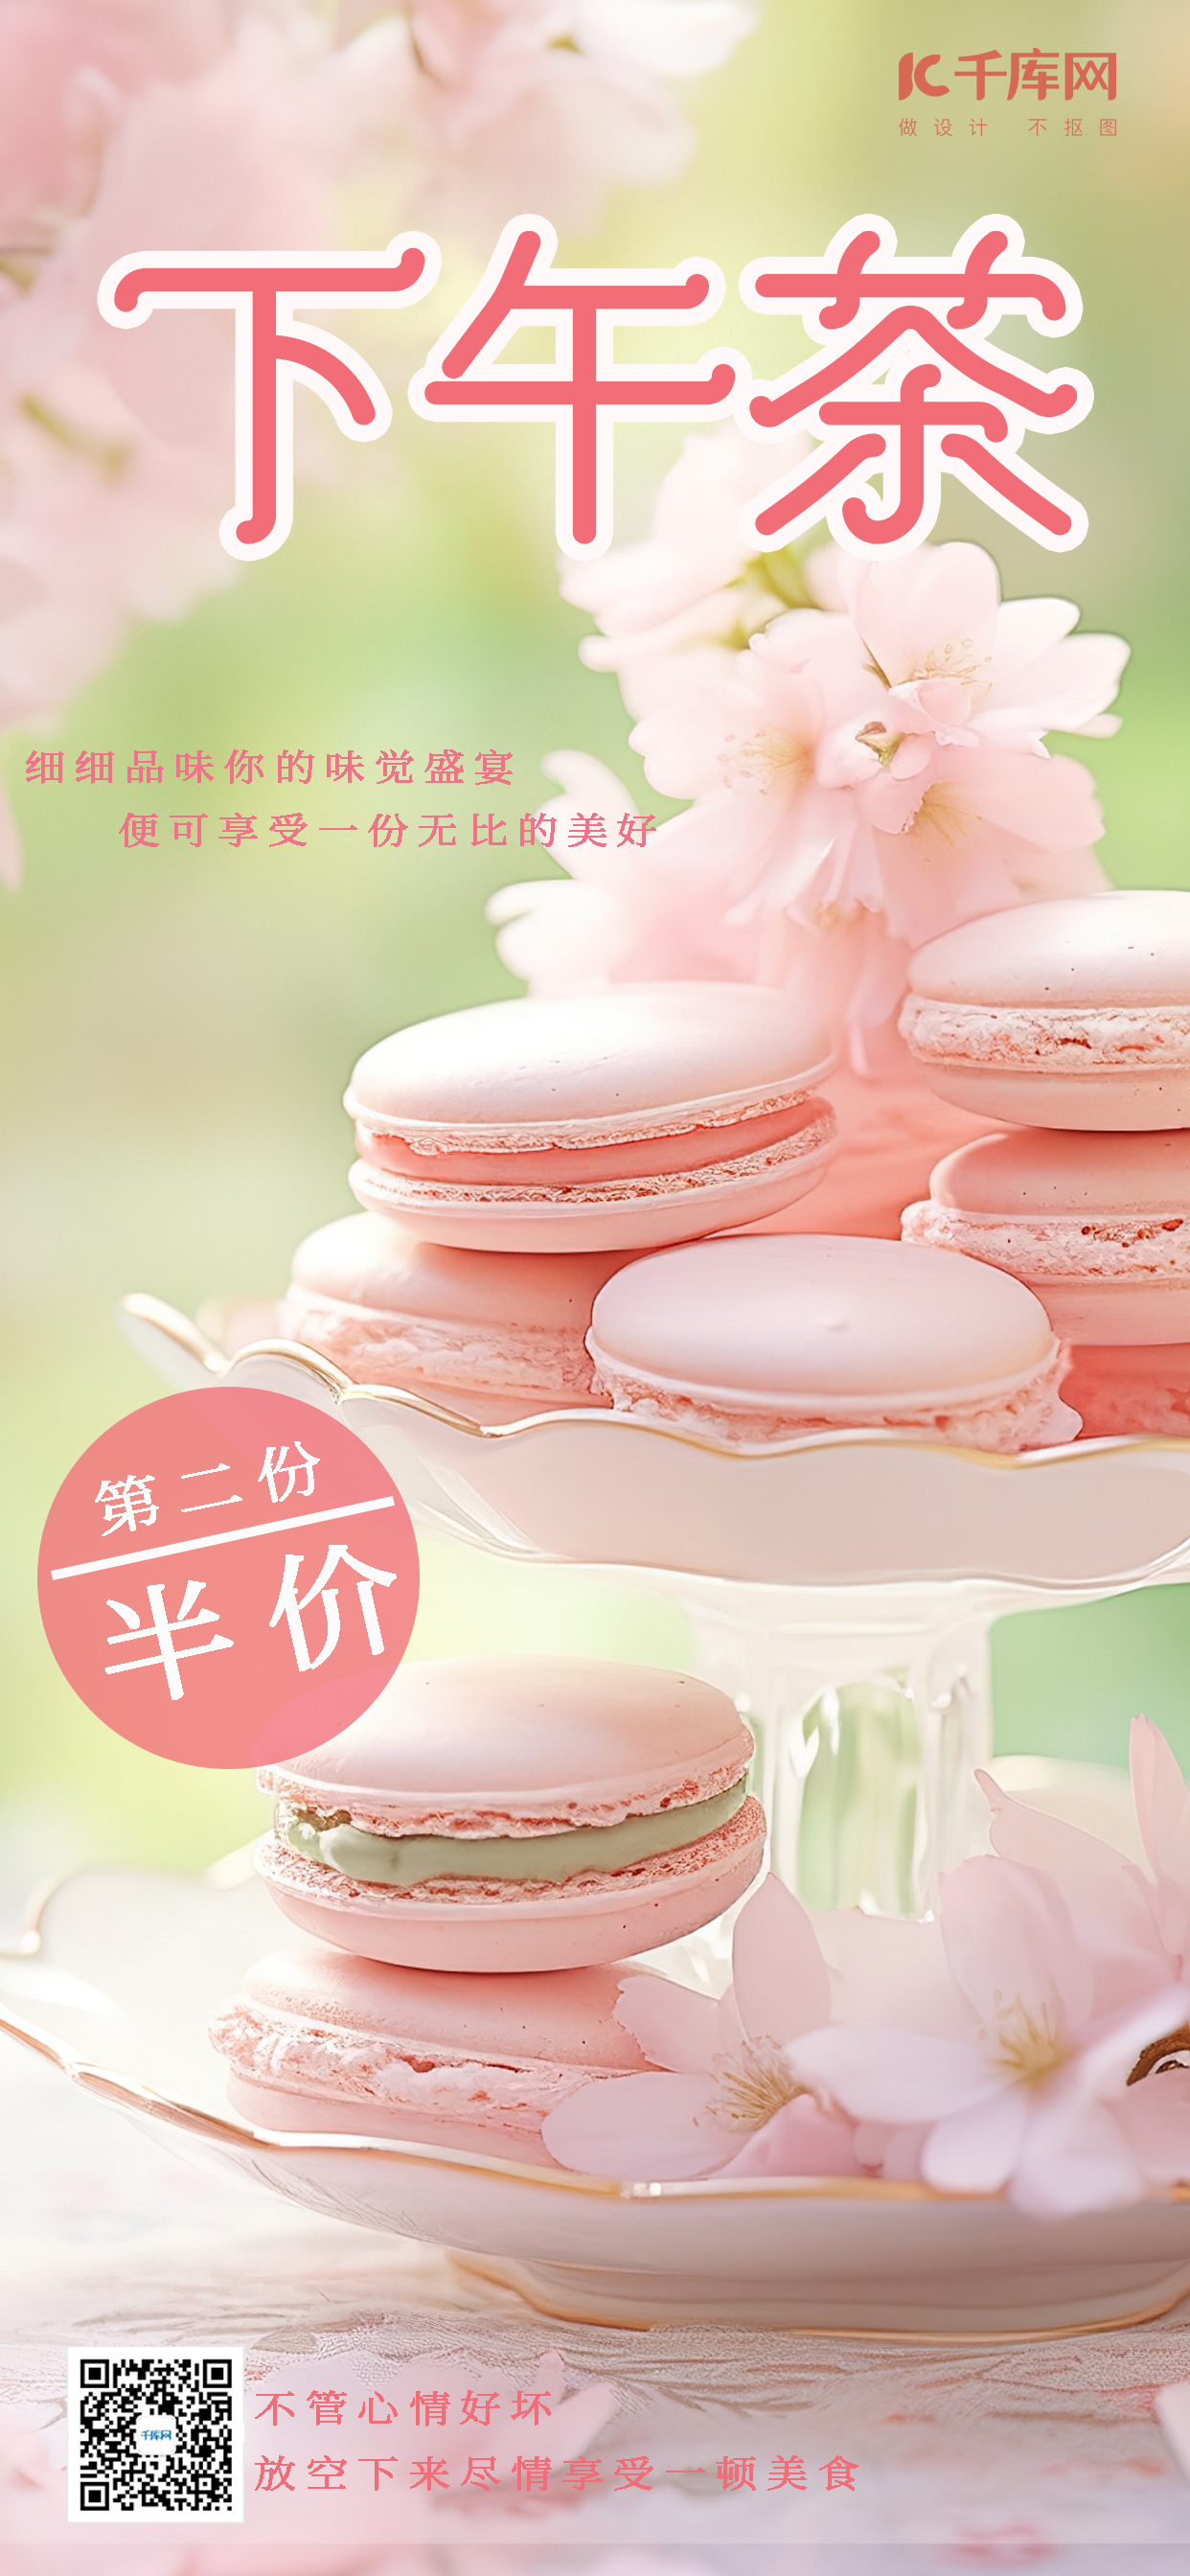 马卡龙马卡龙饼干粉色手绘AIG广告营销C海报图片